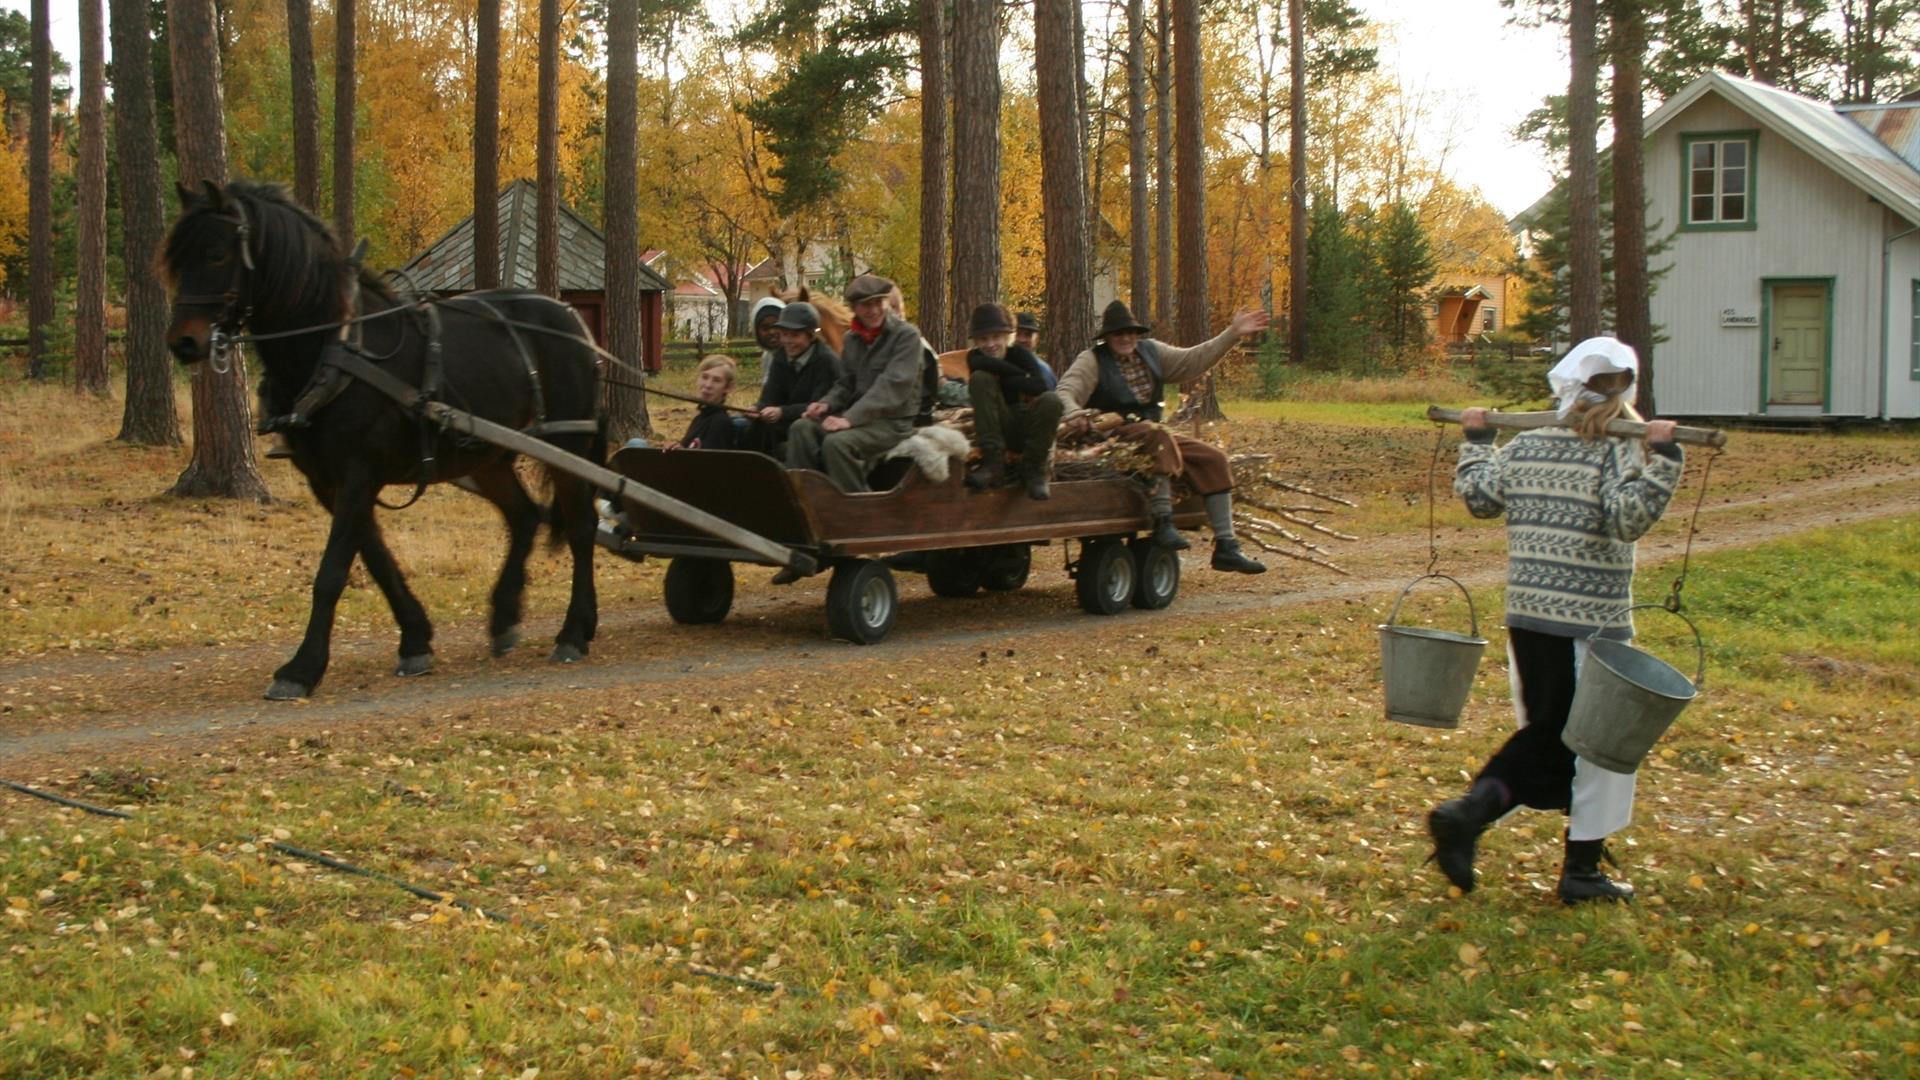 Hest som drar en vogn med en gruppe mennesker. En kvinne bærer to melkespann. Utenfor museumssenteret Ramsmoen.